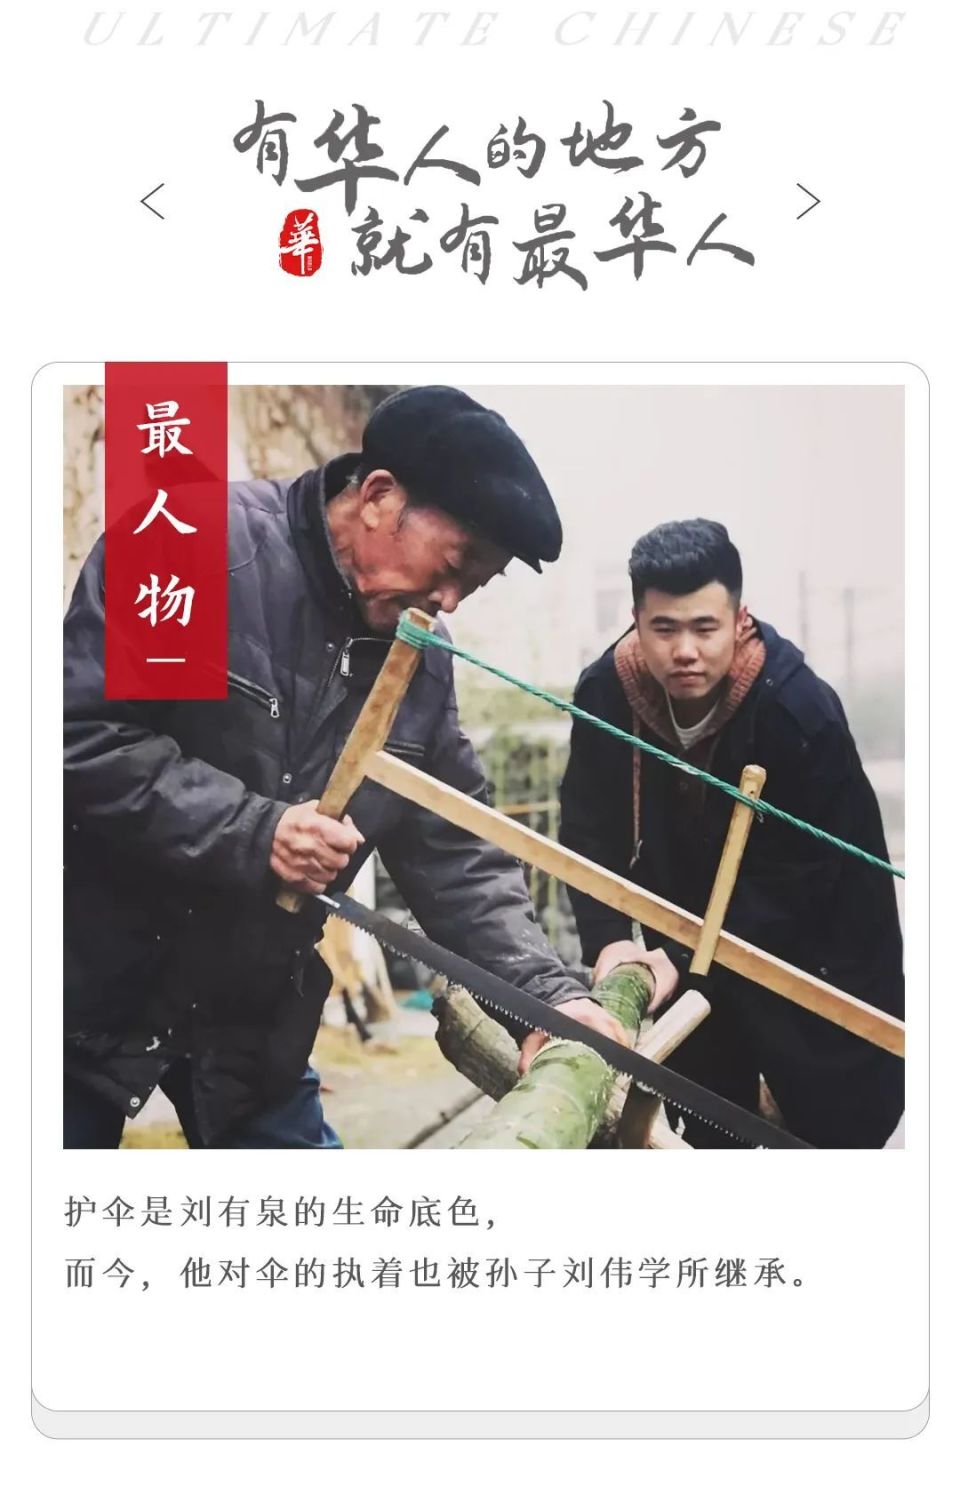 90后中国小伙的一把伞,让老外苦等3个月